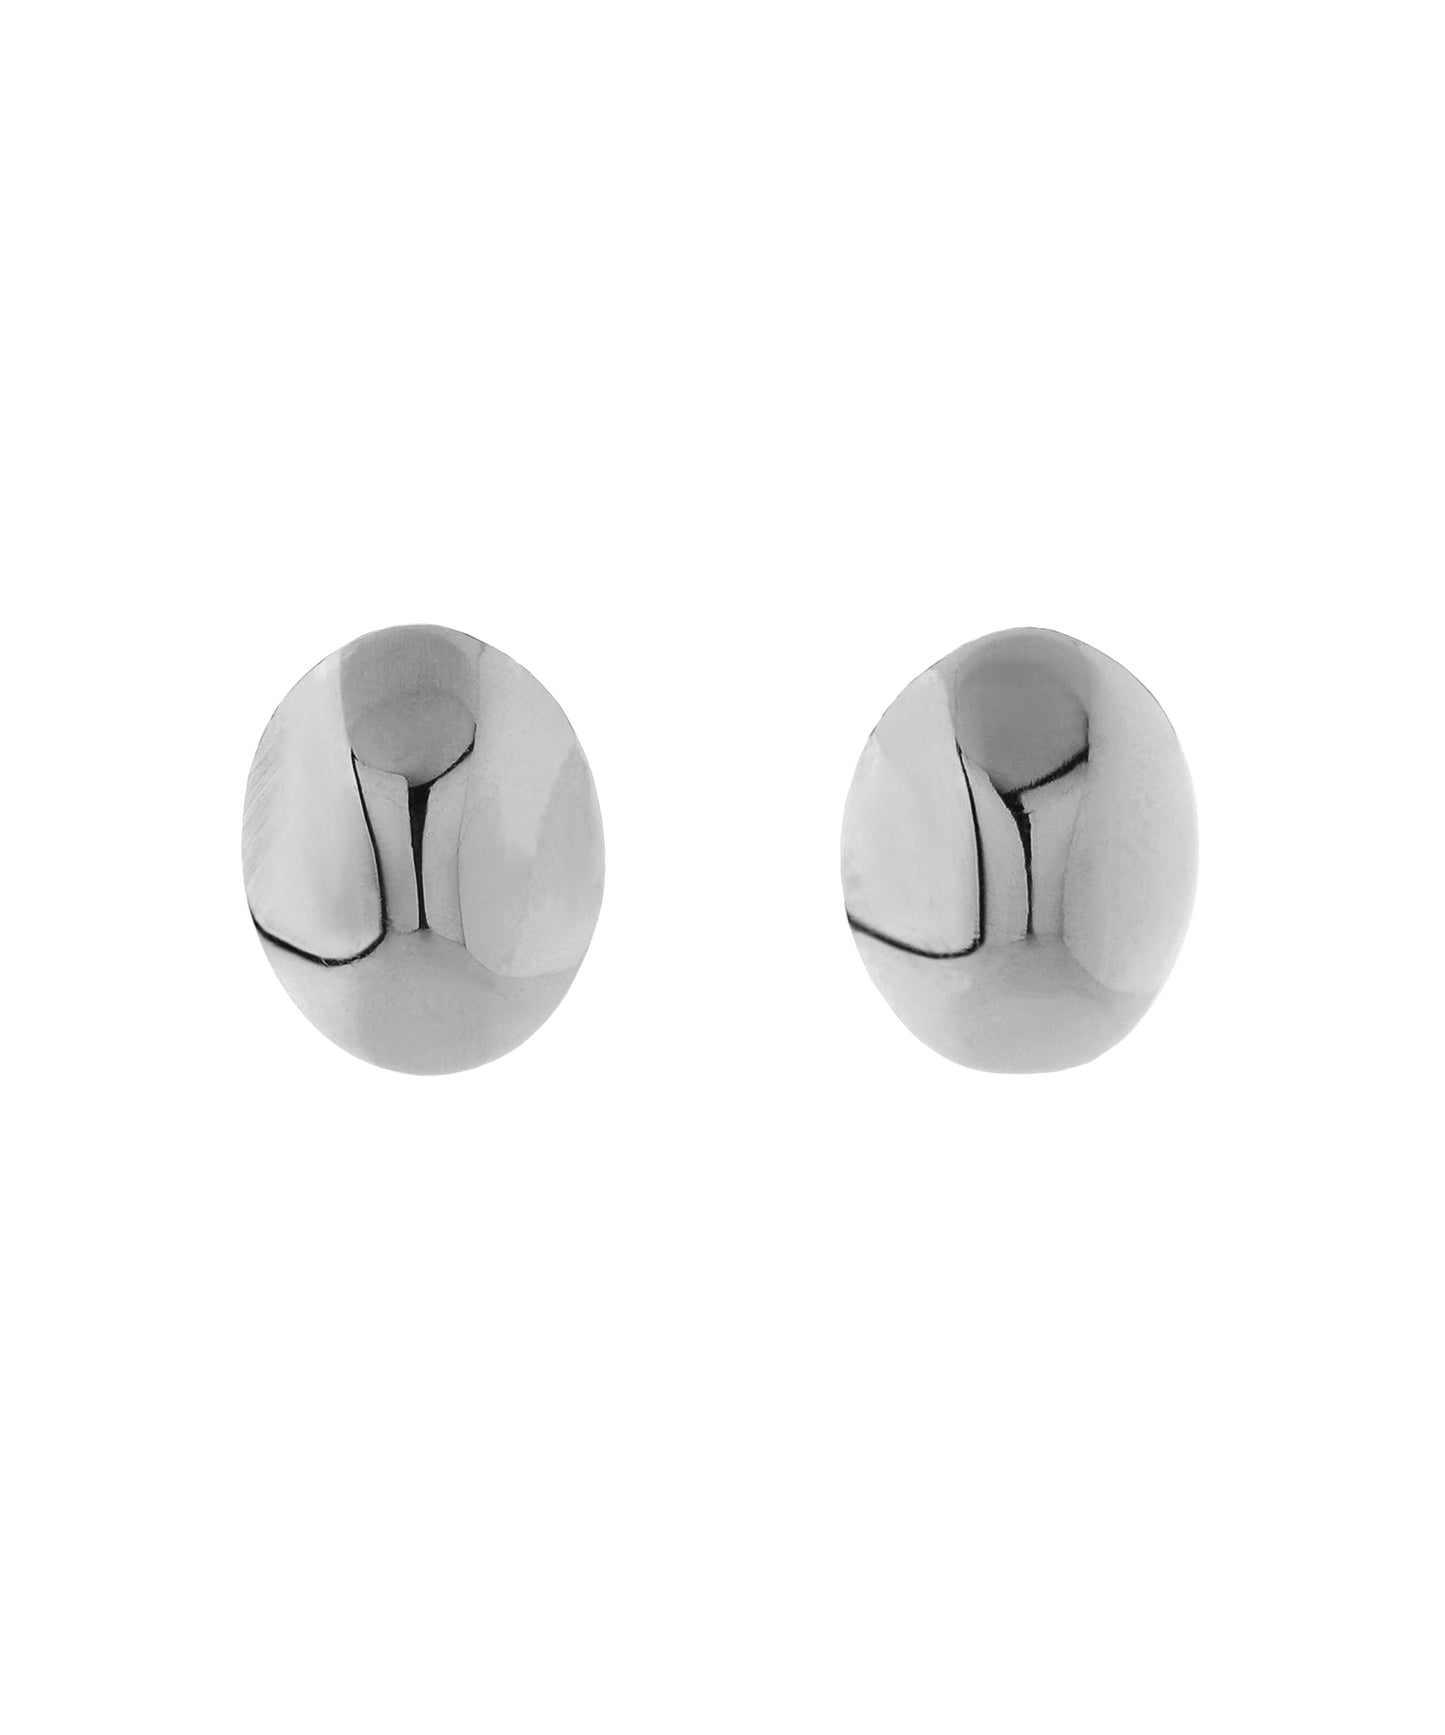 【Stainless Steel IP】 Metal Design Earrings